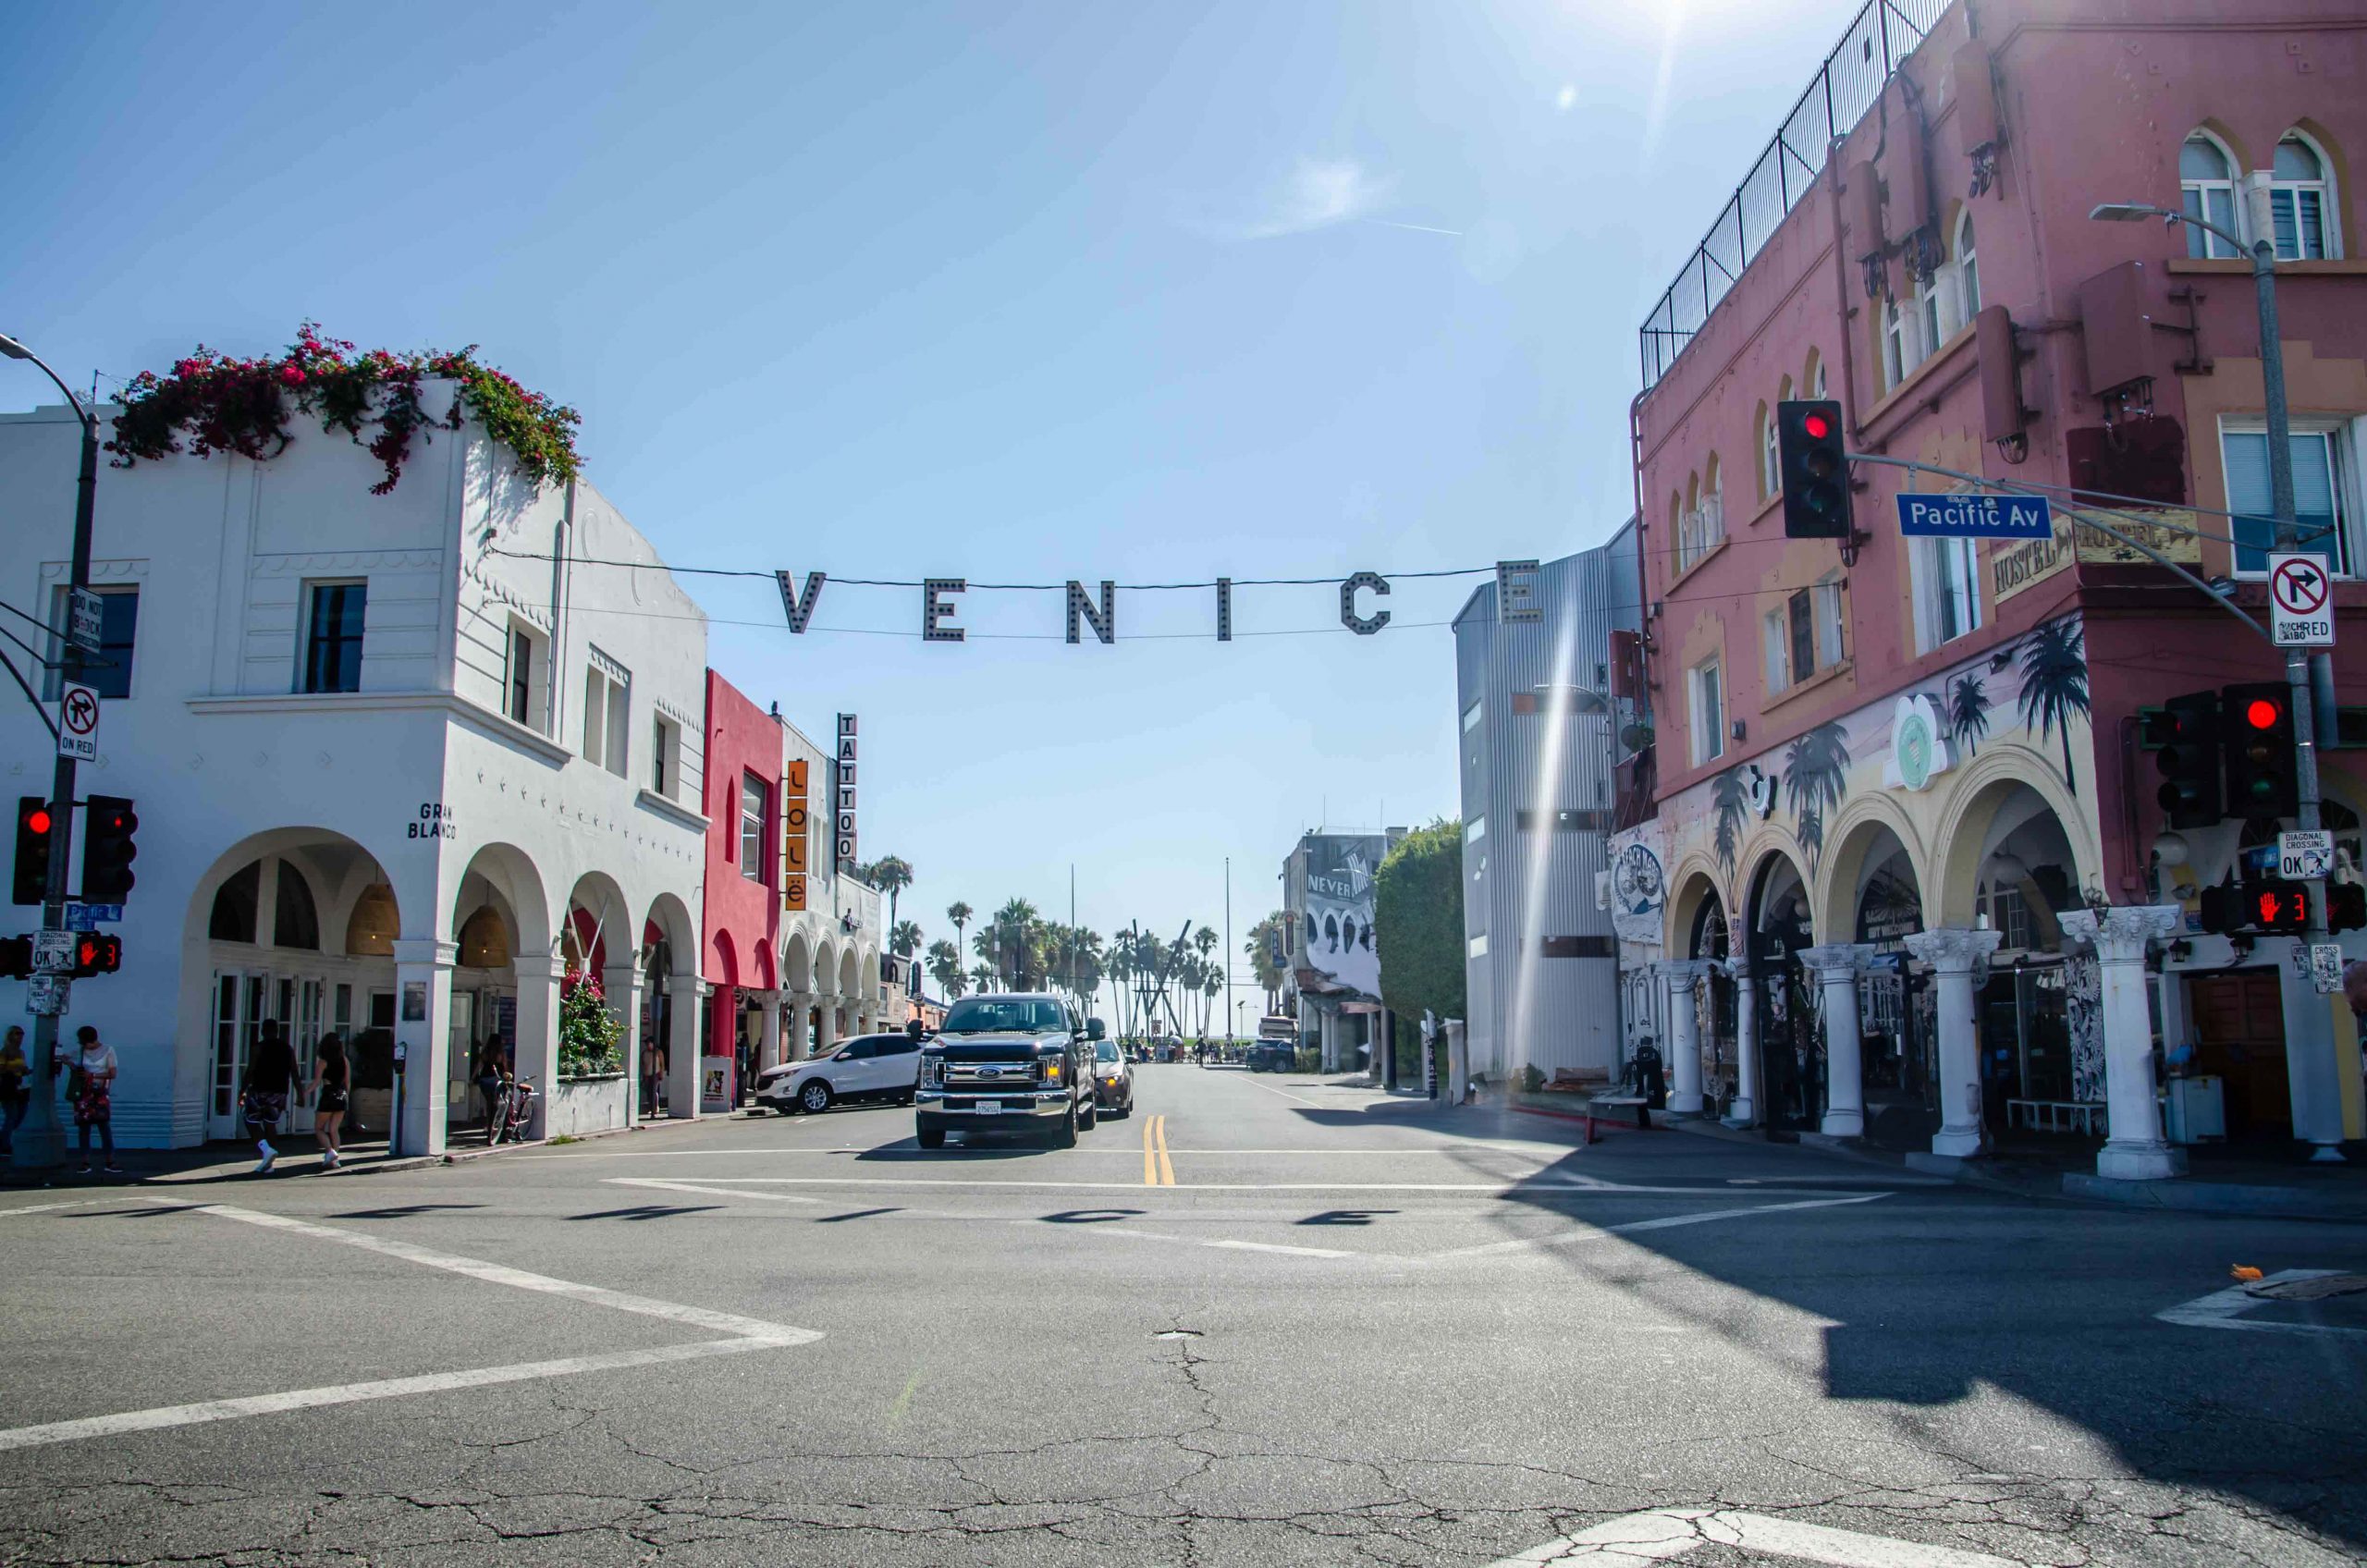 visiter Venice Beach : venice sign